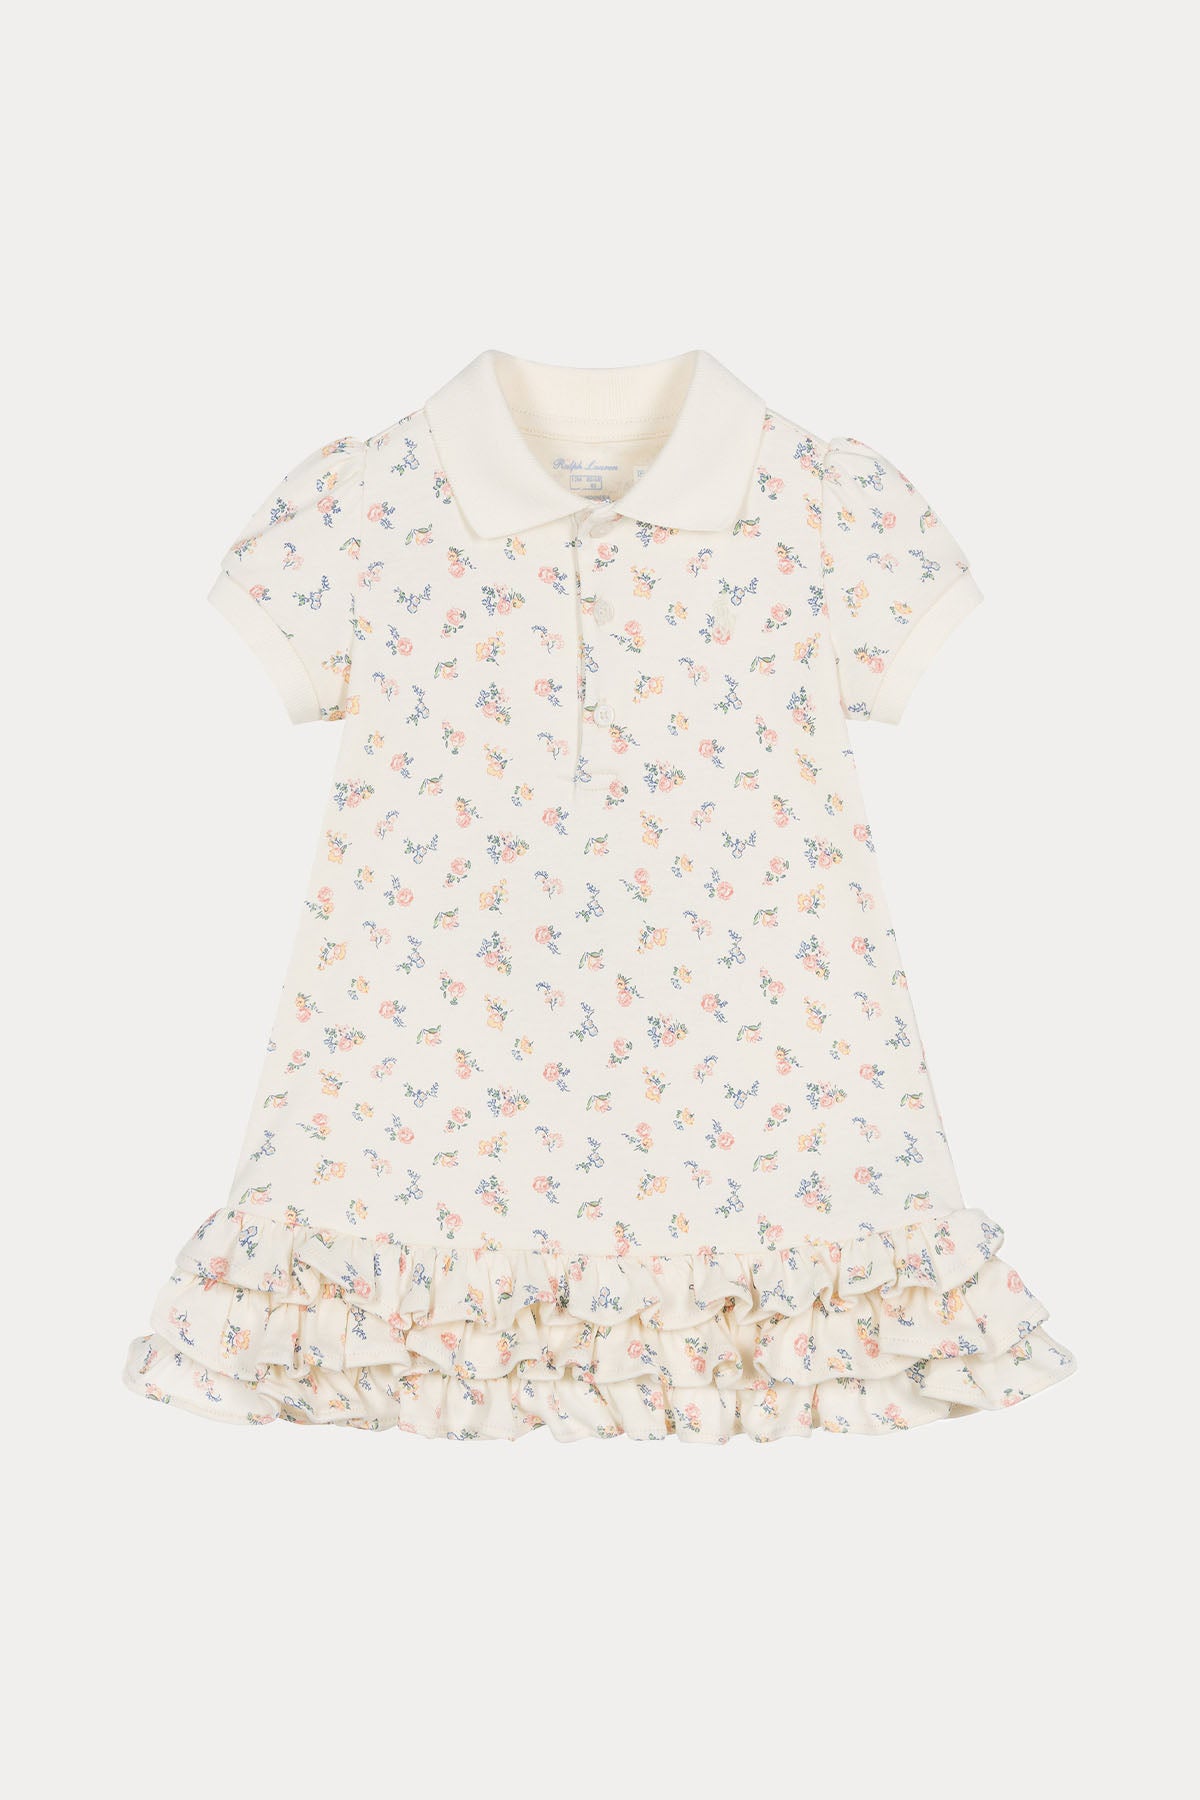 Polo Ralph Lauren Kids 12-18 Aylık Kız Bebek Çiçek Desenli Elbise